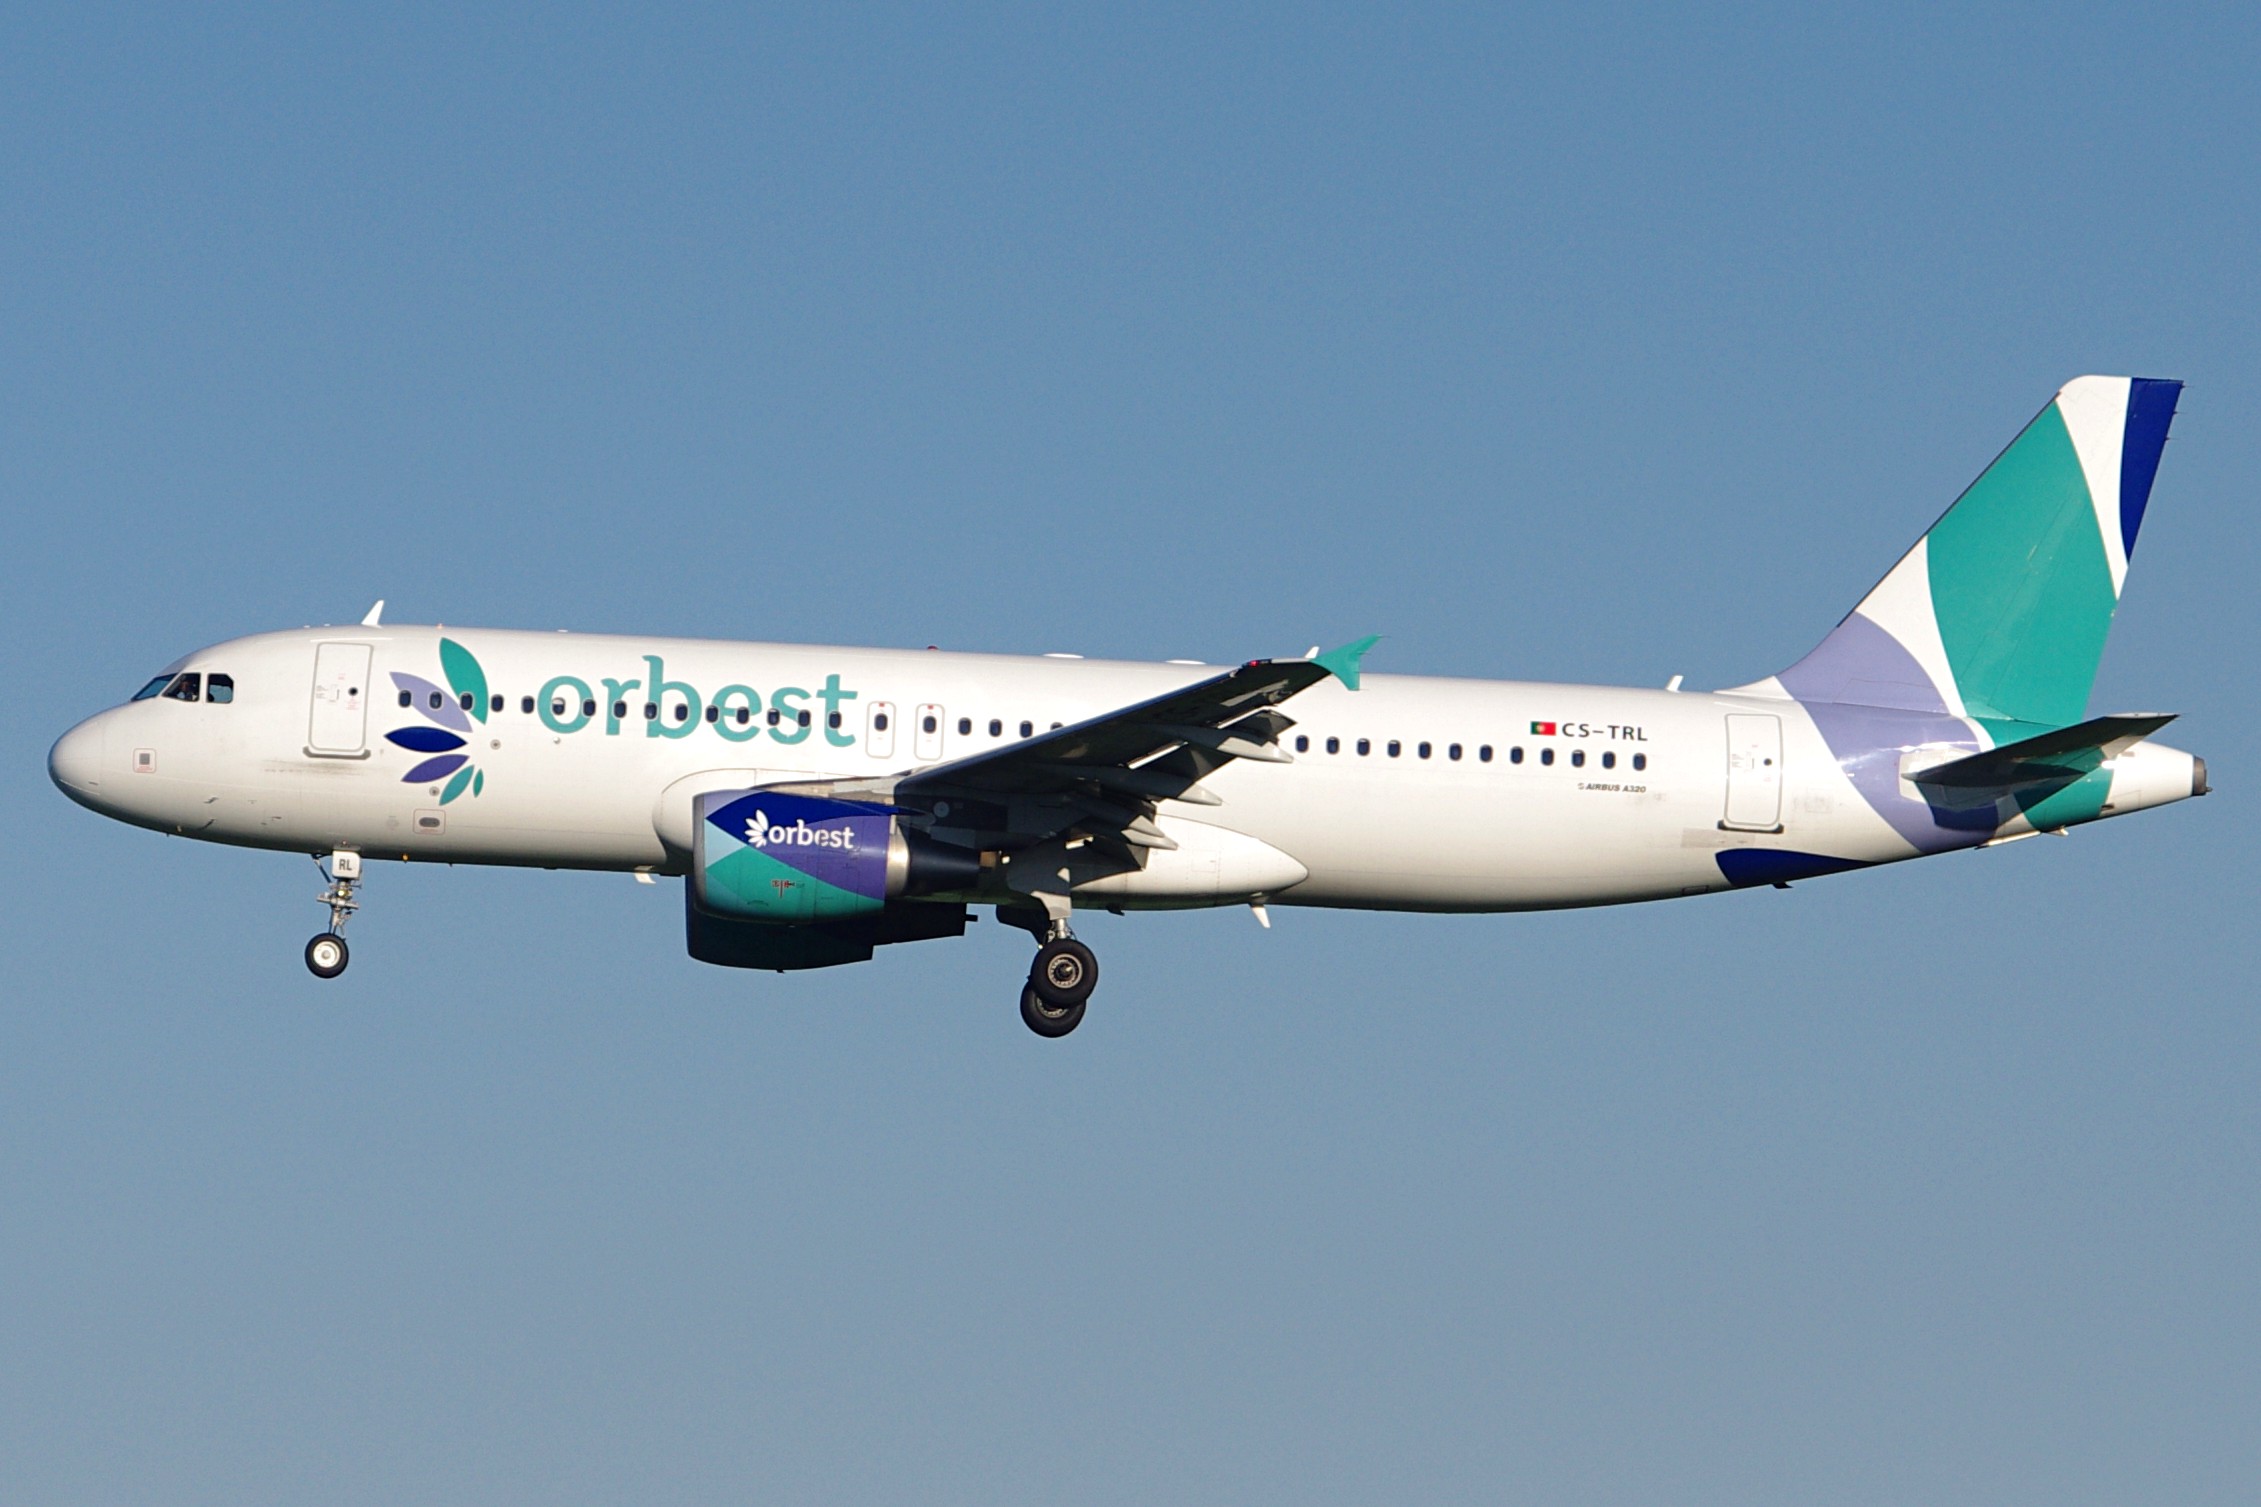 Orbest Airlines programa operaciones aéreas a Punta Cana, Cancún y Varadero desde Lisboa